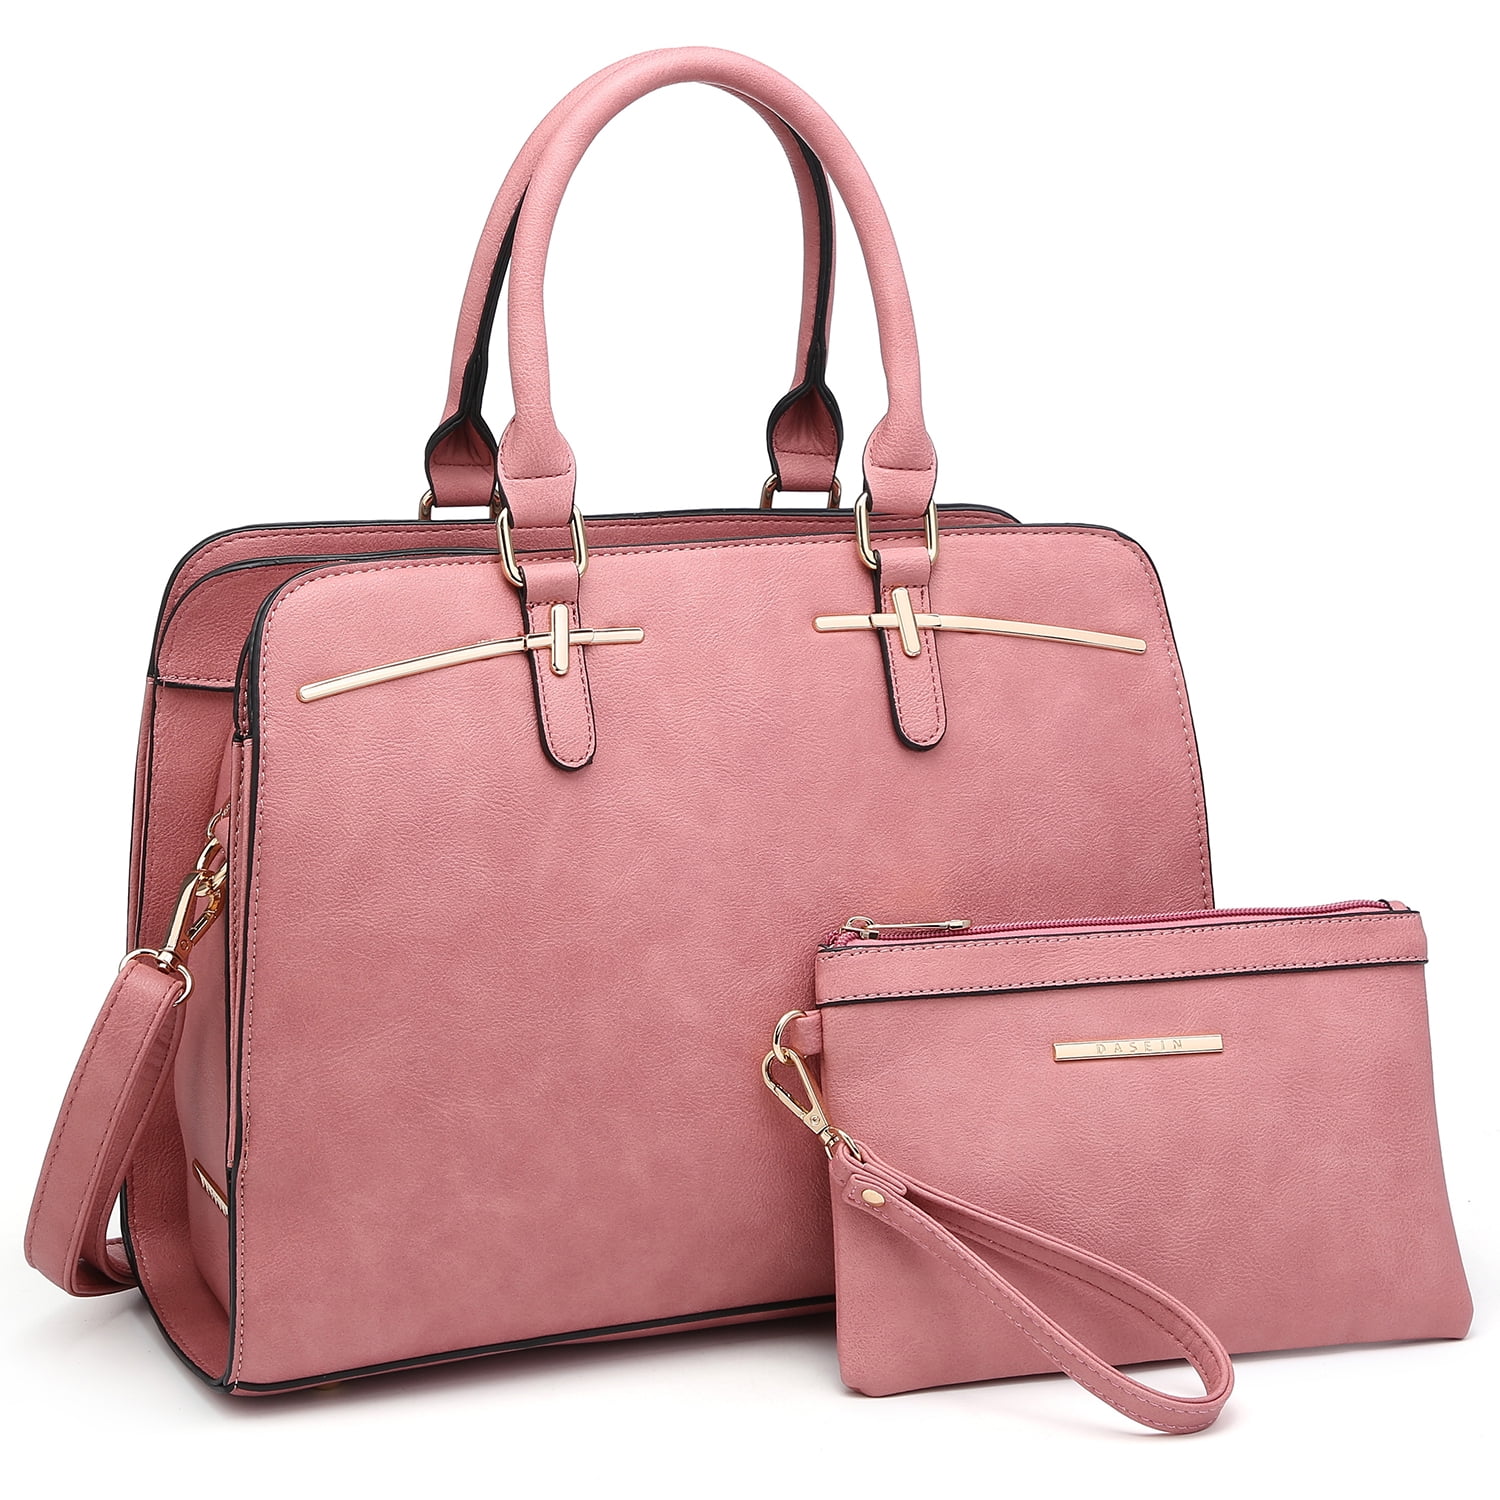 Dasein 2pcs Set Women Handbags Faux Leather Briefcase Purse Tote Shoulder Bags 